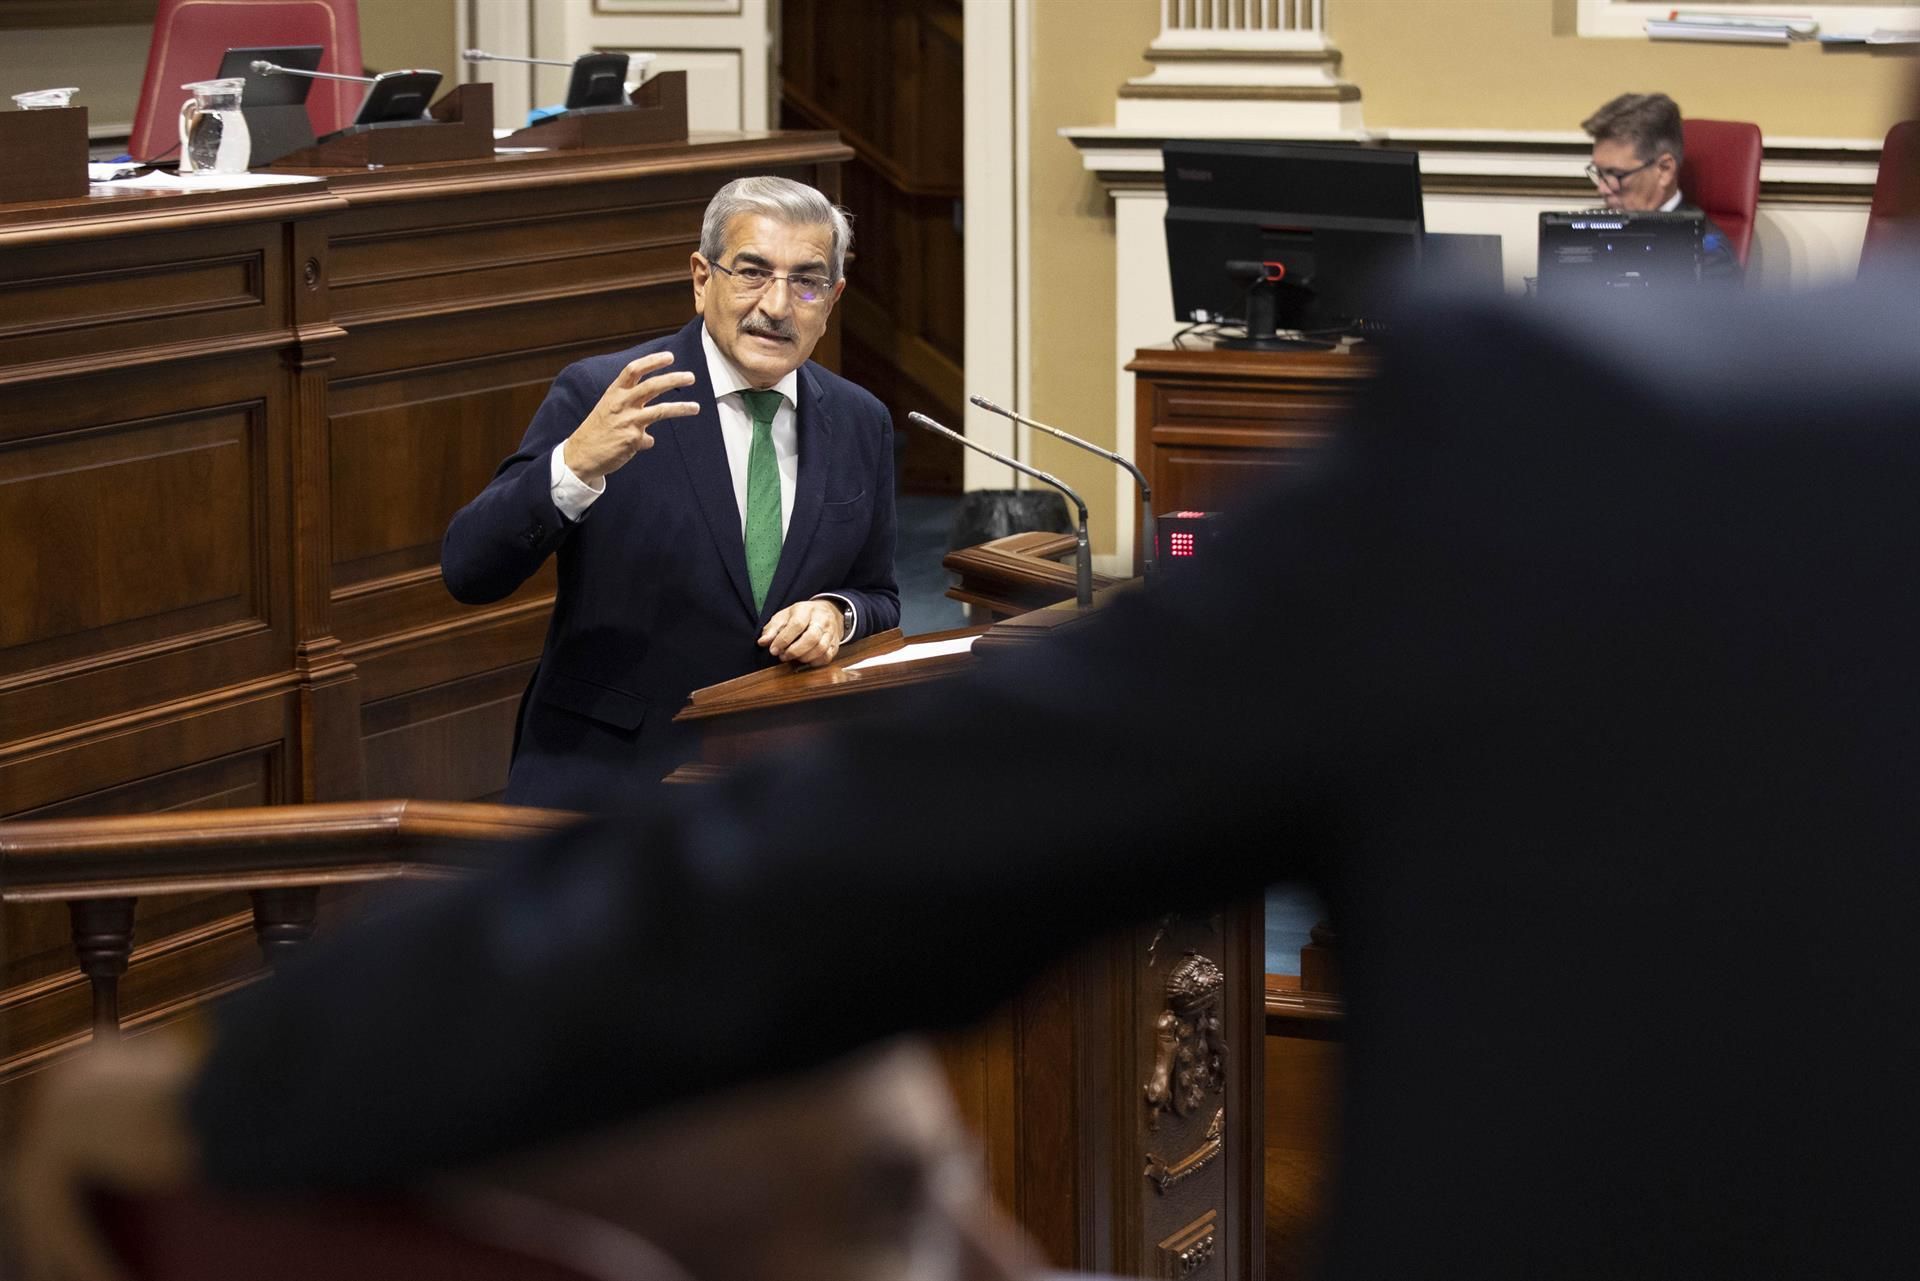 El consejero de Hacienda, Román Rodríguez, durante su intervención en el pleno del Parlamento de Canarias.EFE/Miguel Barreto